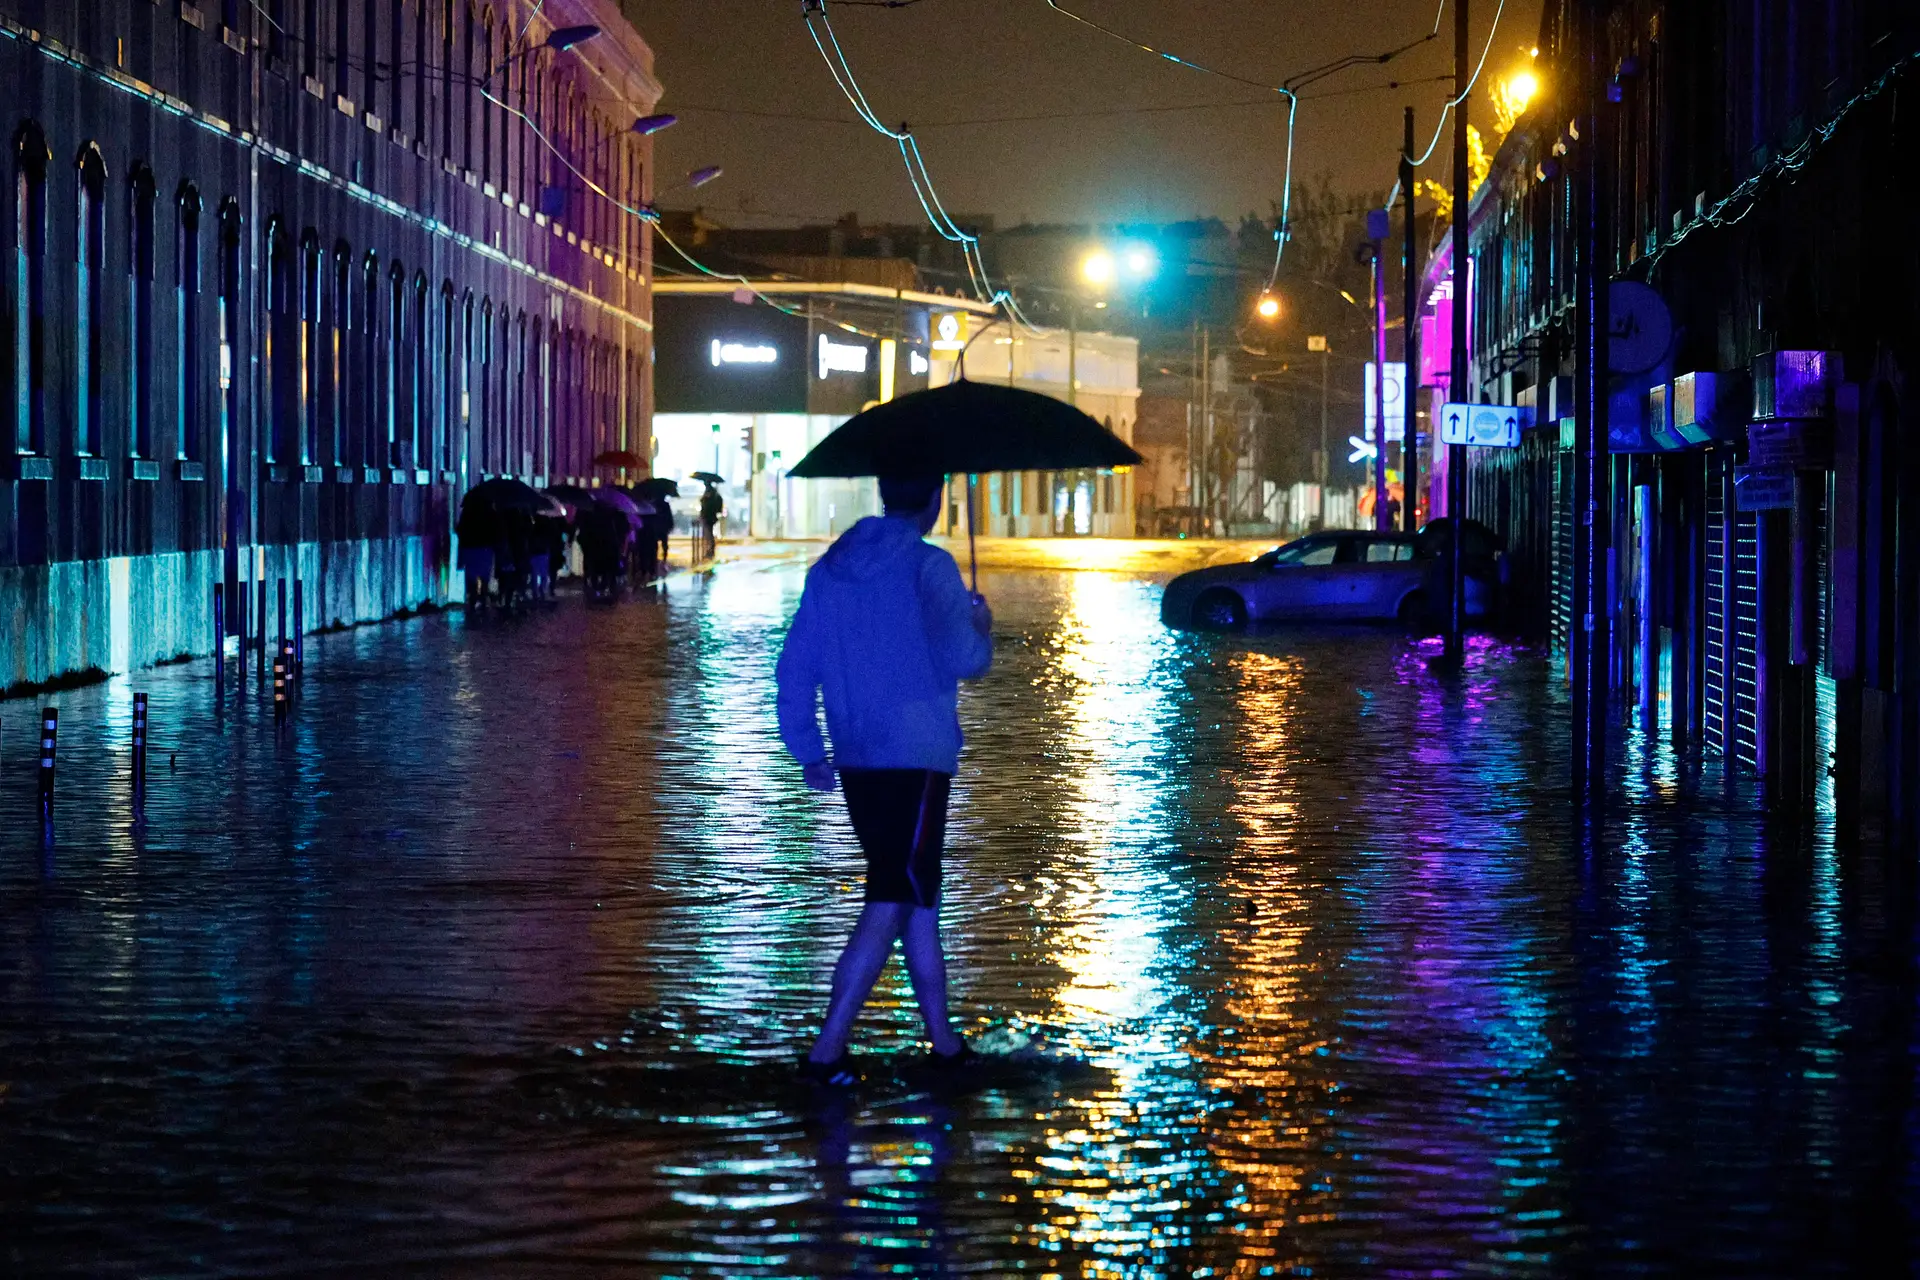 Proteção Civil alerta para mau tempo “severo” a partir das 23h e admite inundações em zonas urbanas